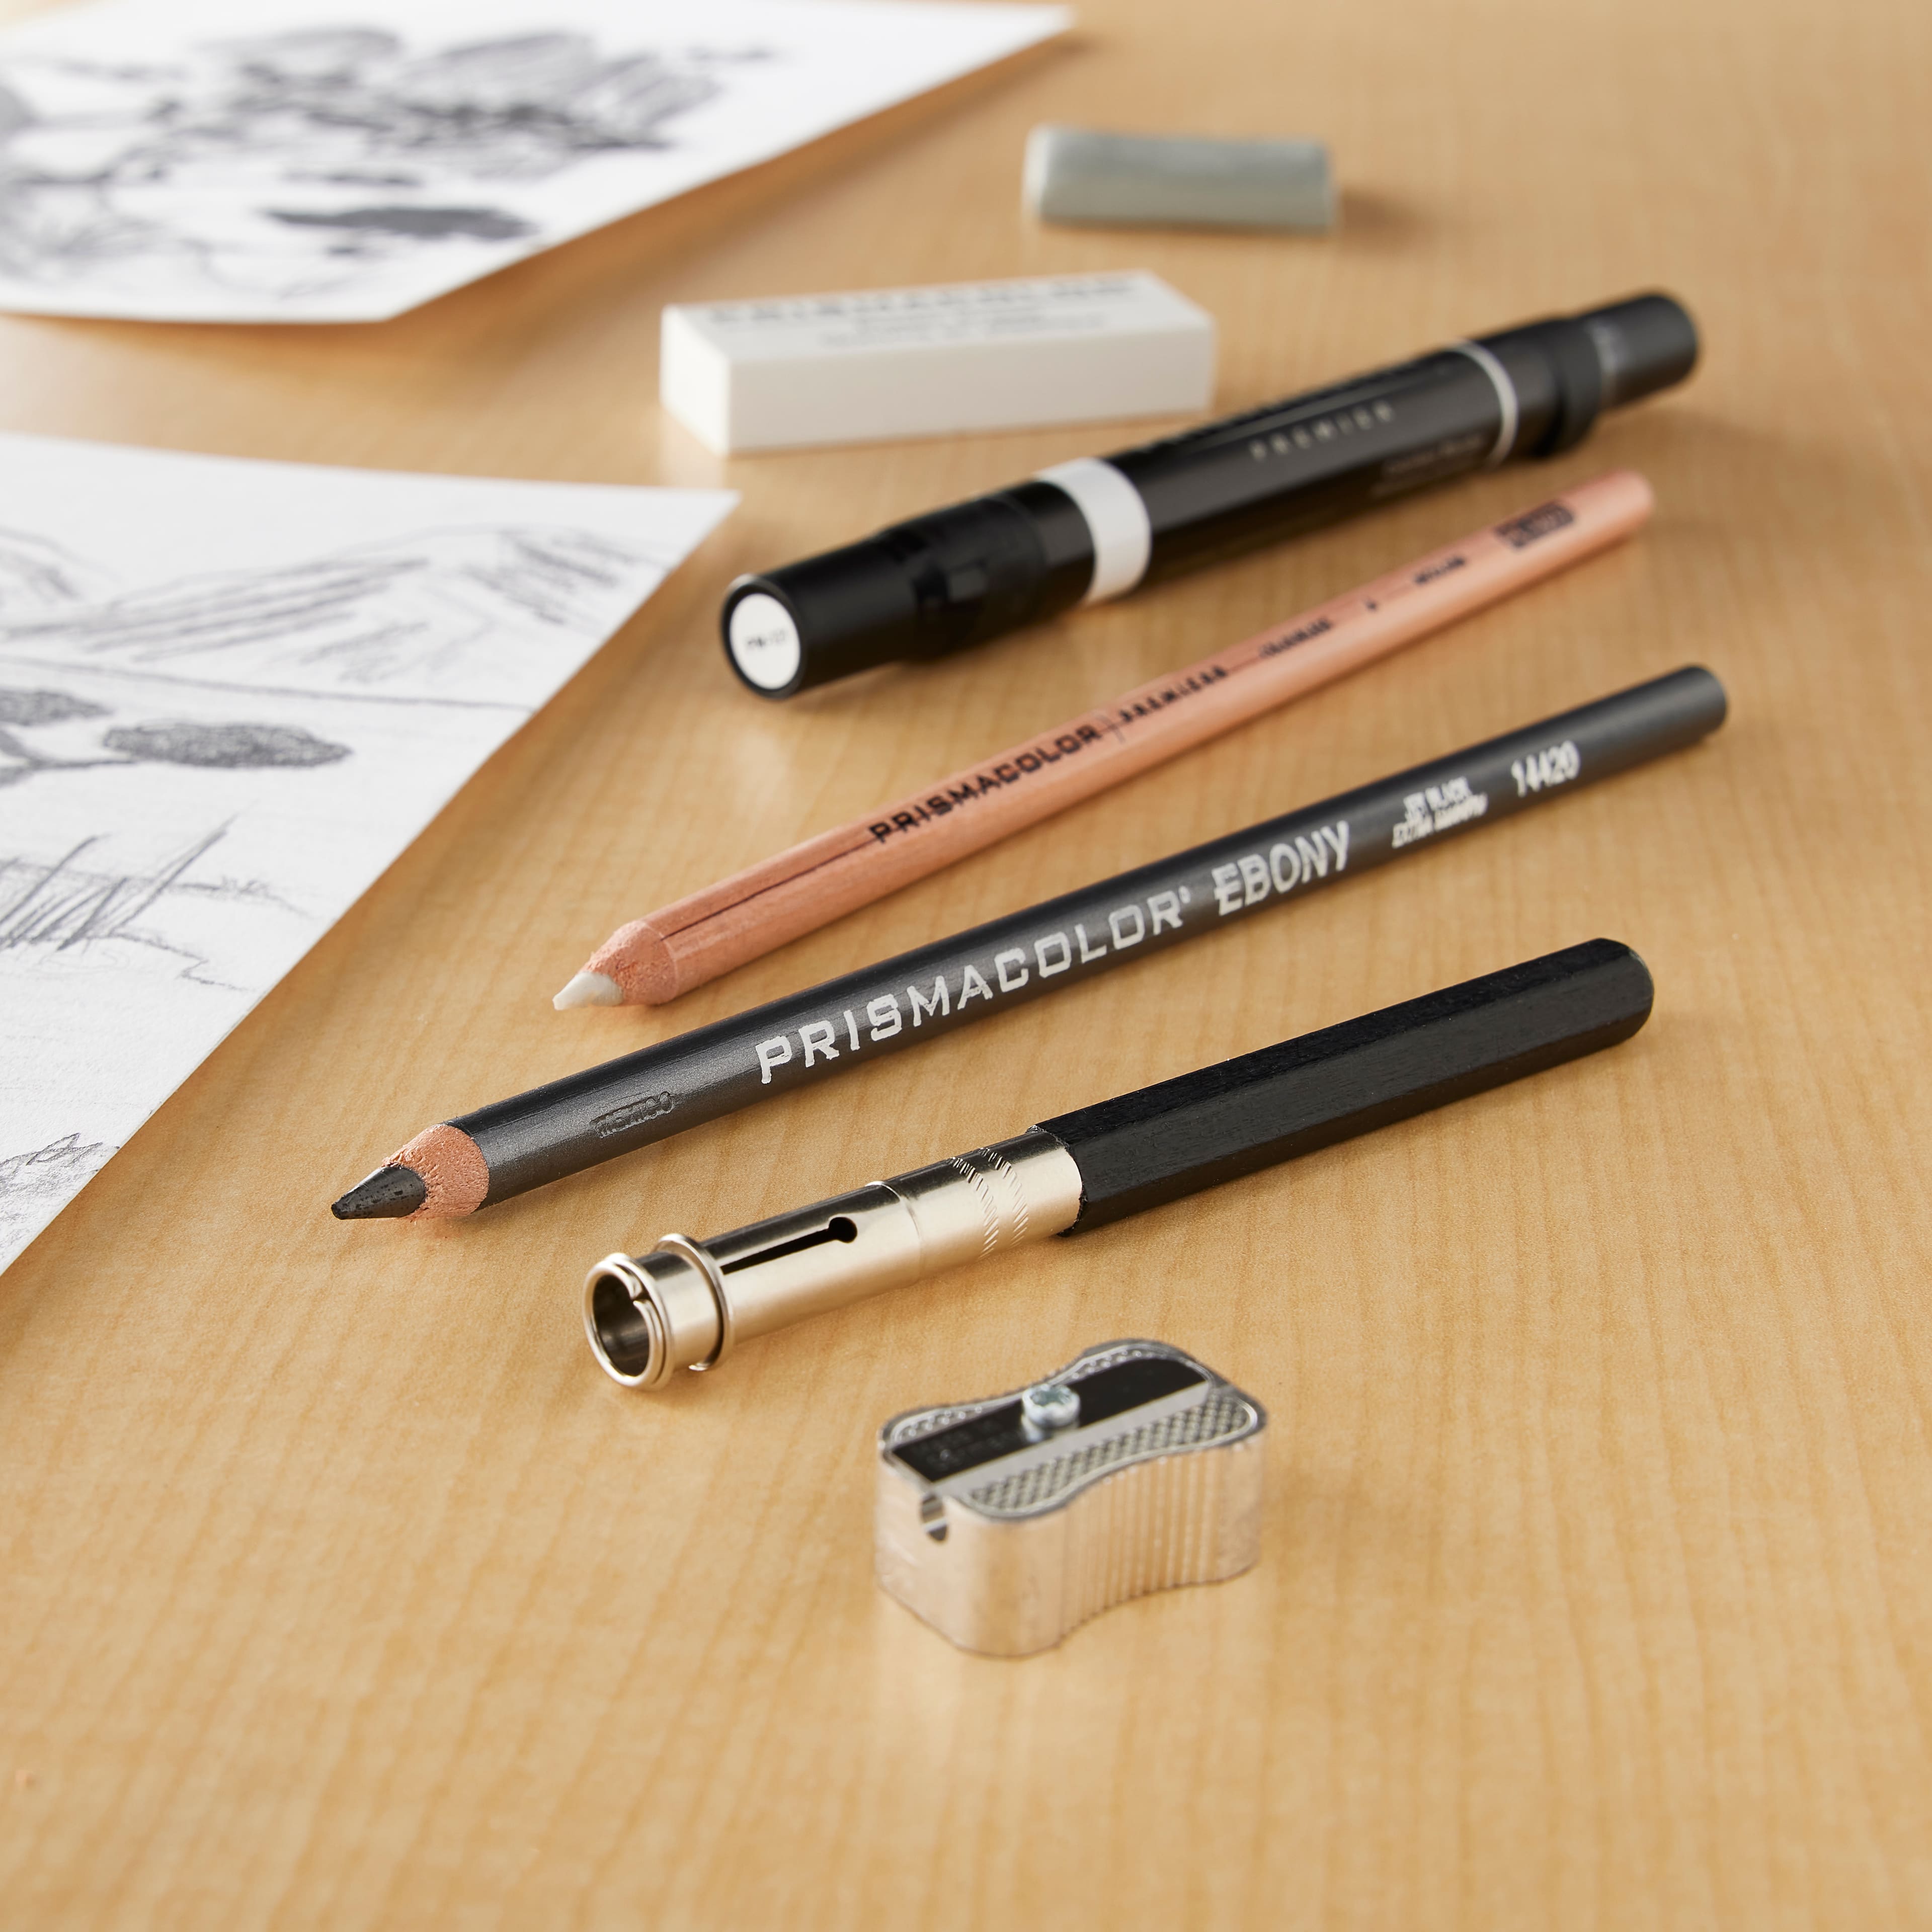 Prismacolor Premier Colored Pencil Accessory Set Kit 7 Piece Eraser Blender  Etc